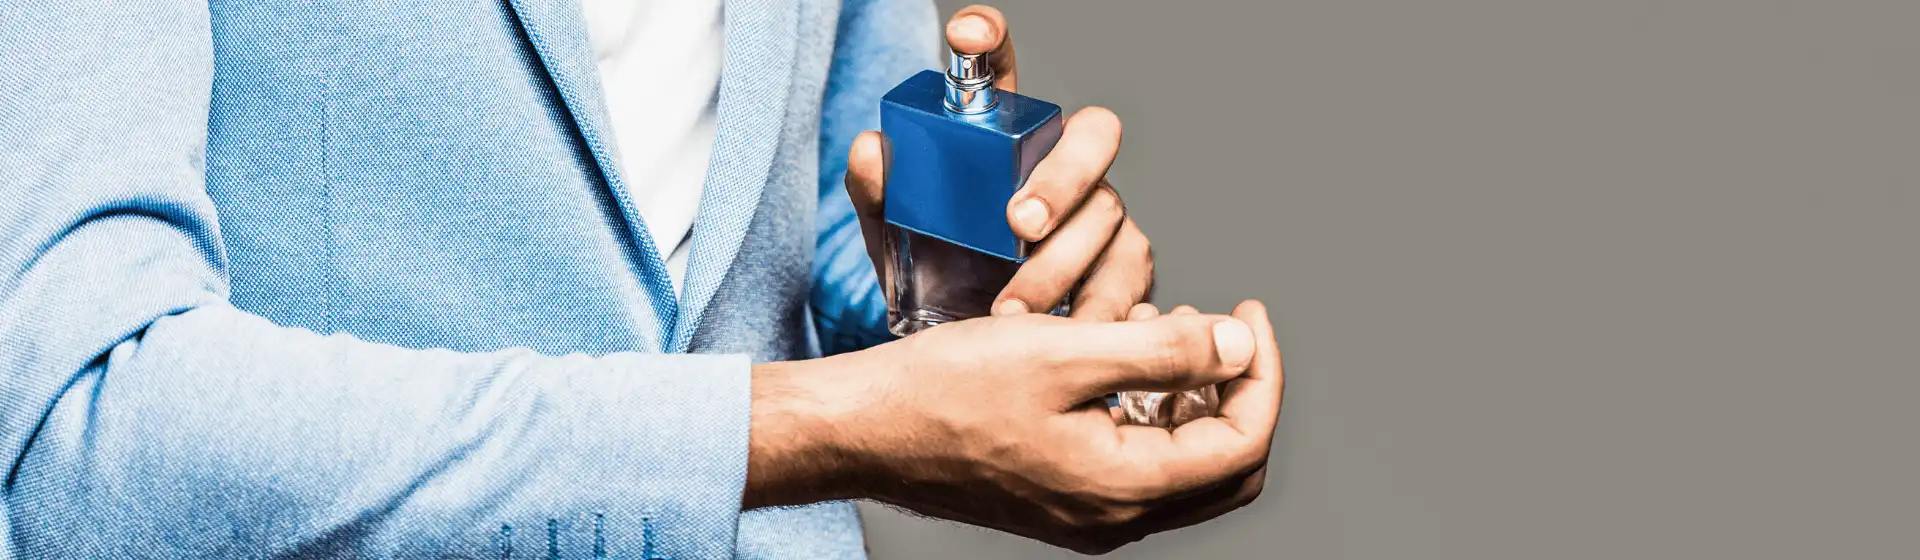 Perfume masculino importado: 18 melhores opções para investir